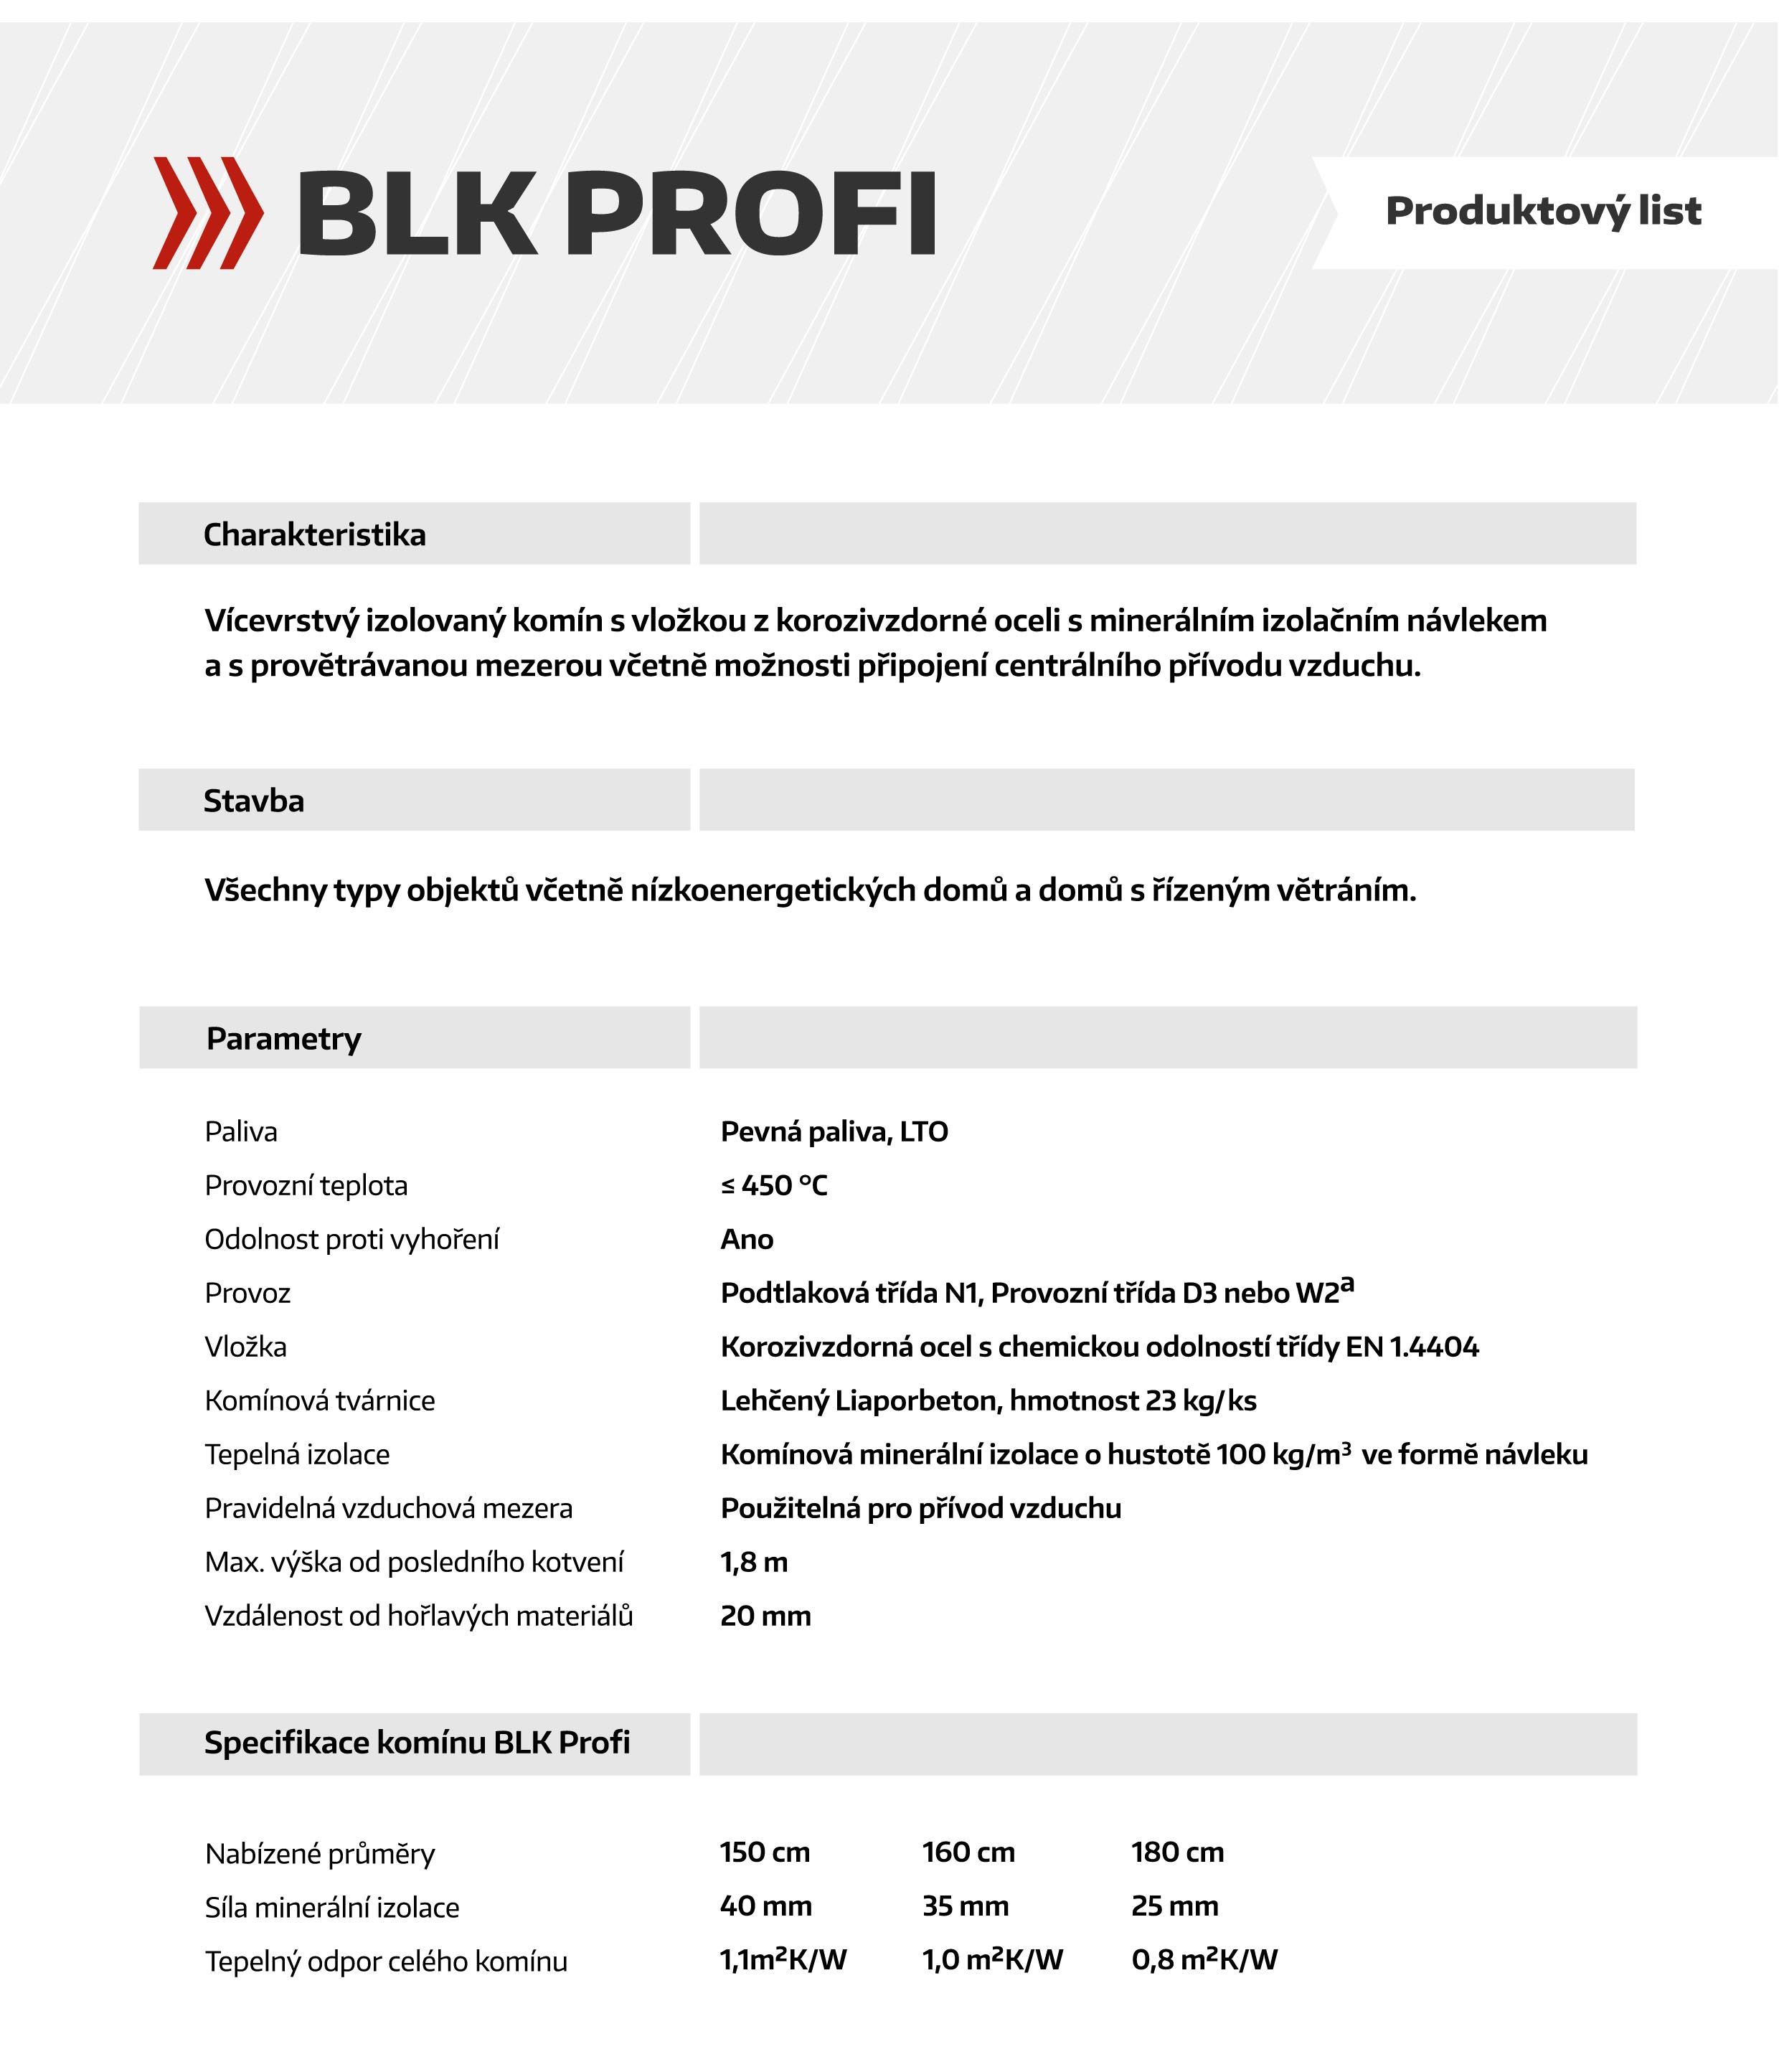 BLK_Profi_produktovy_list